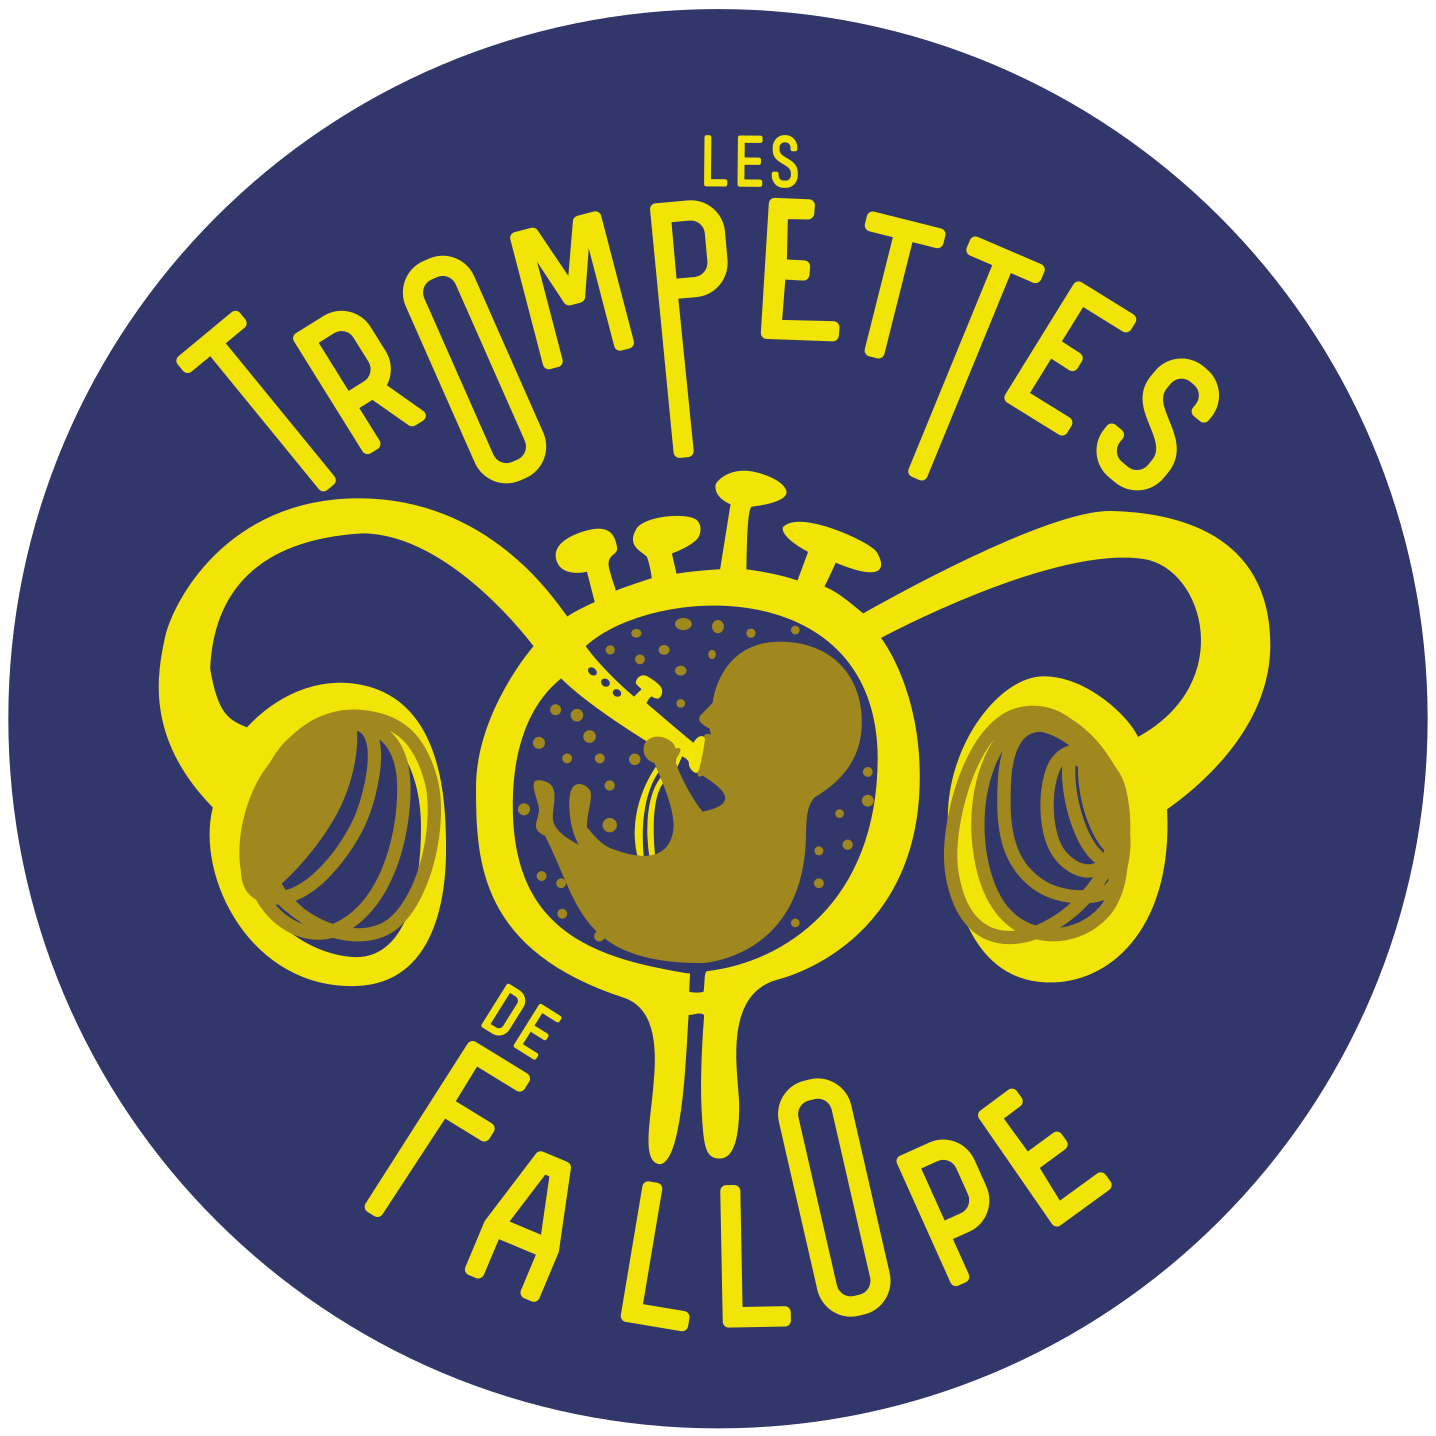 Les Trompettes De Fallope (TDF)